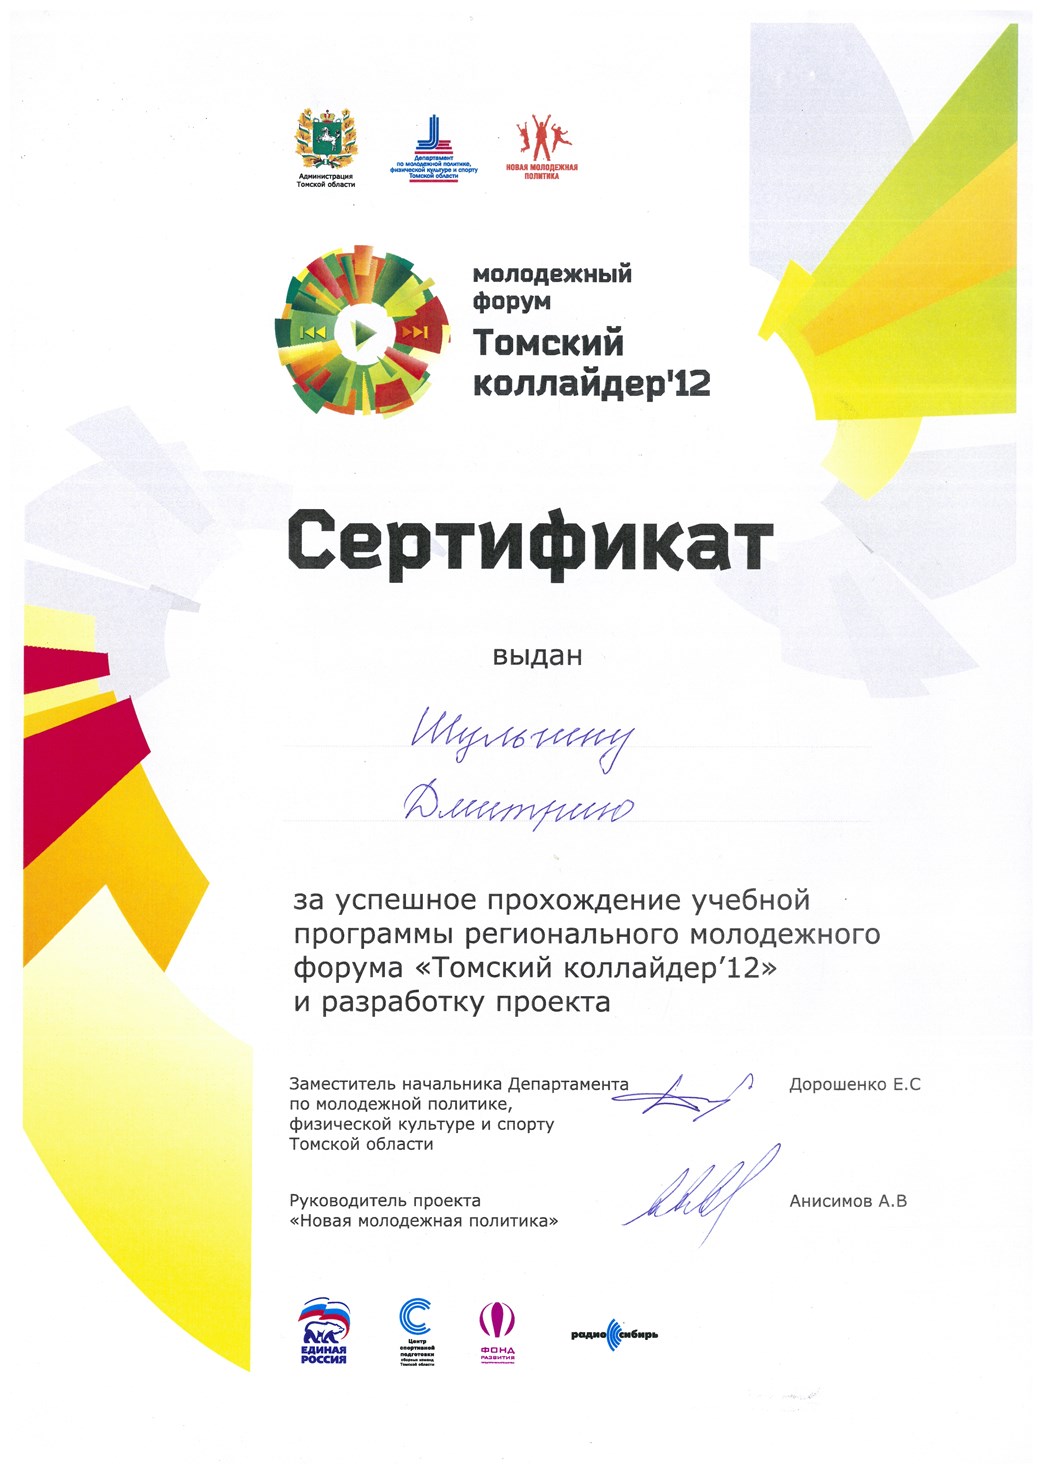 Сертификат Шульгина Дмитрия